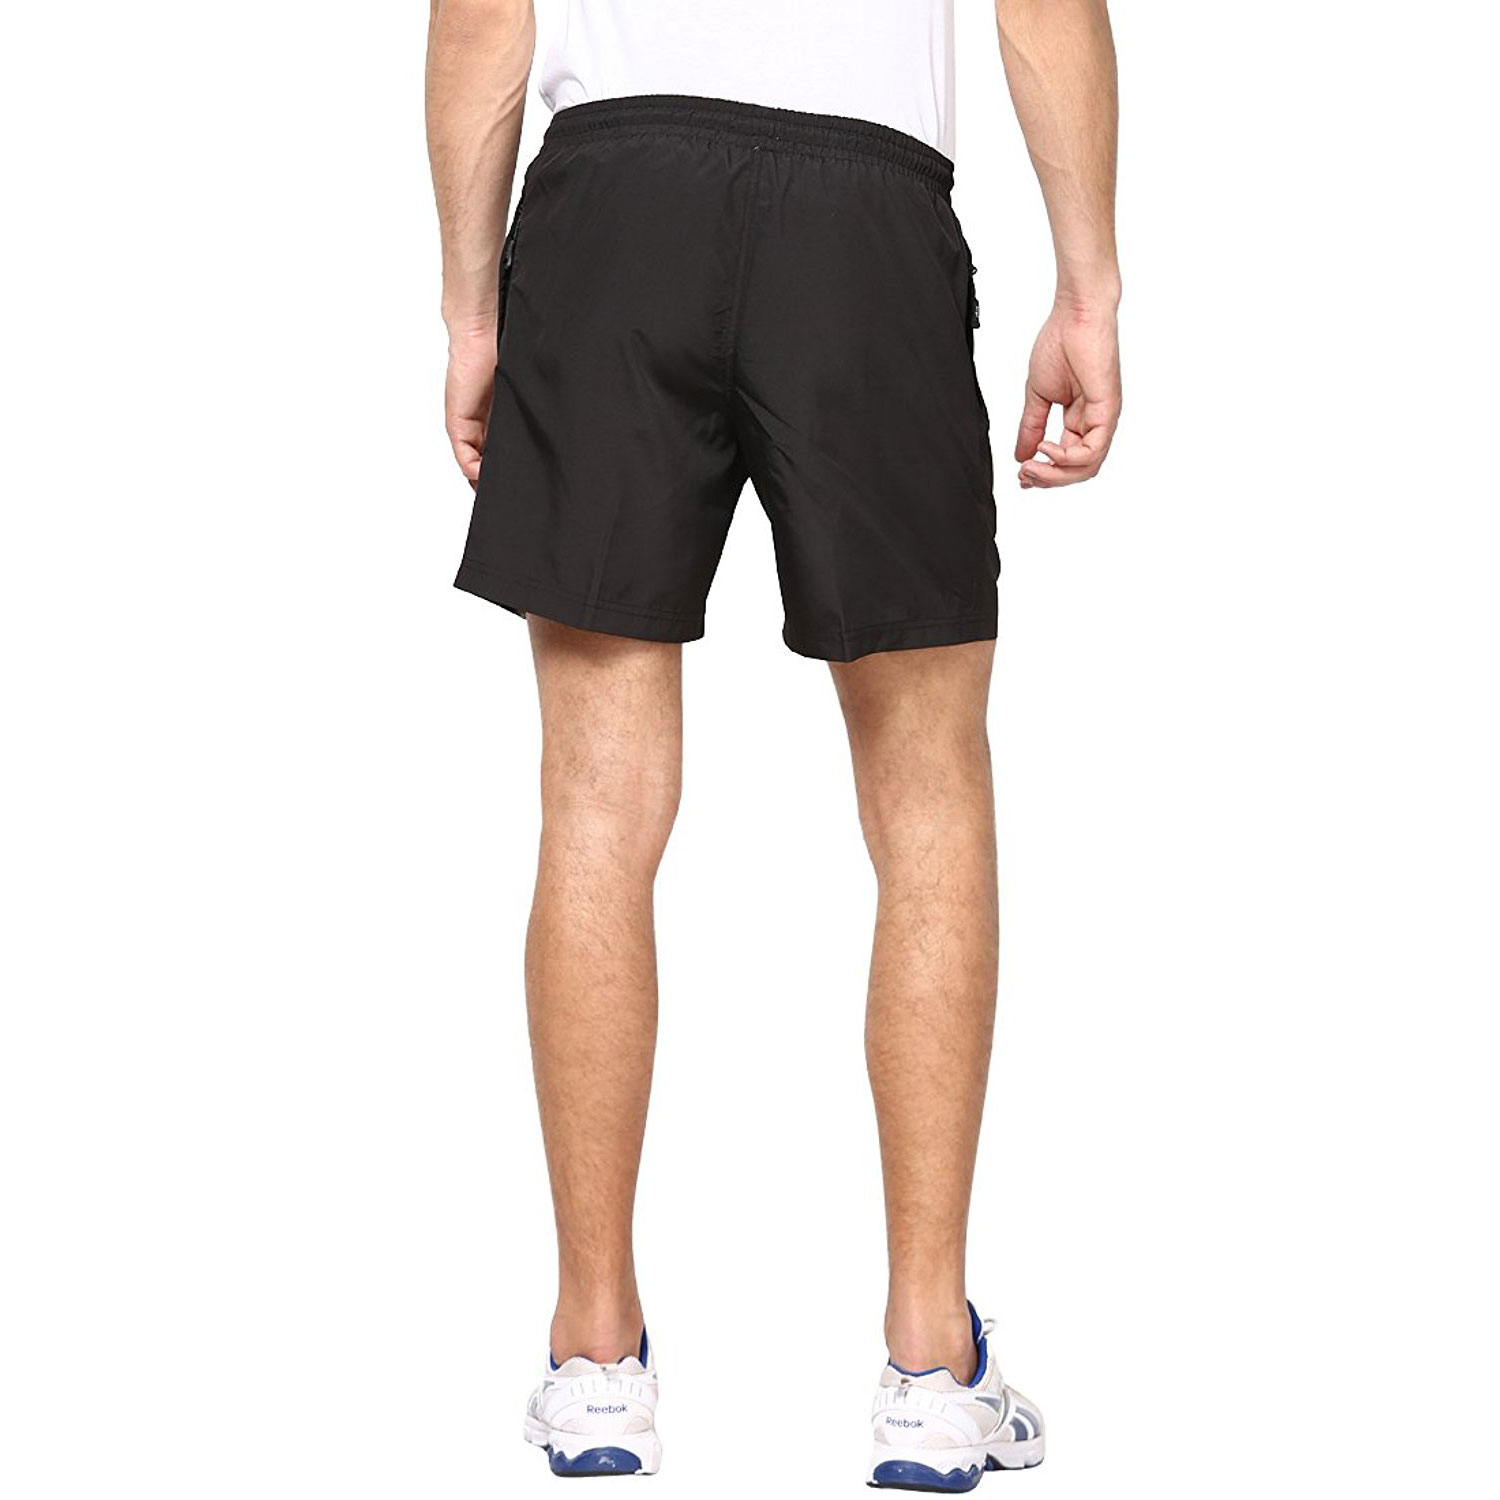  Berge Men's Black Woven Shorts